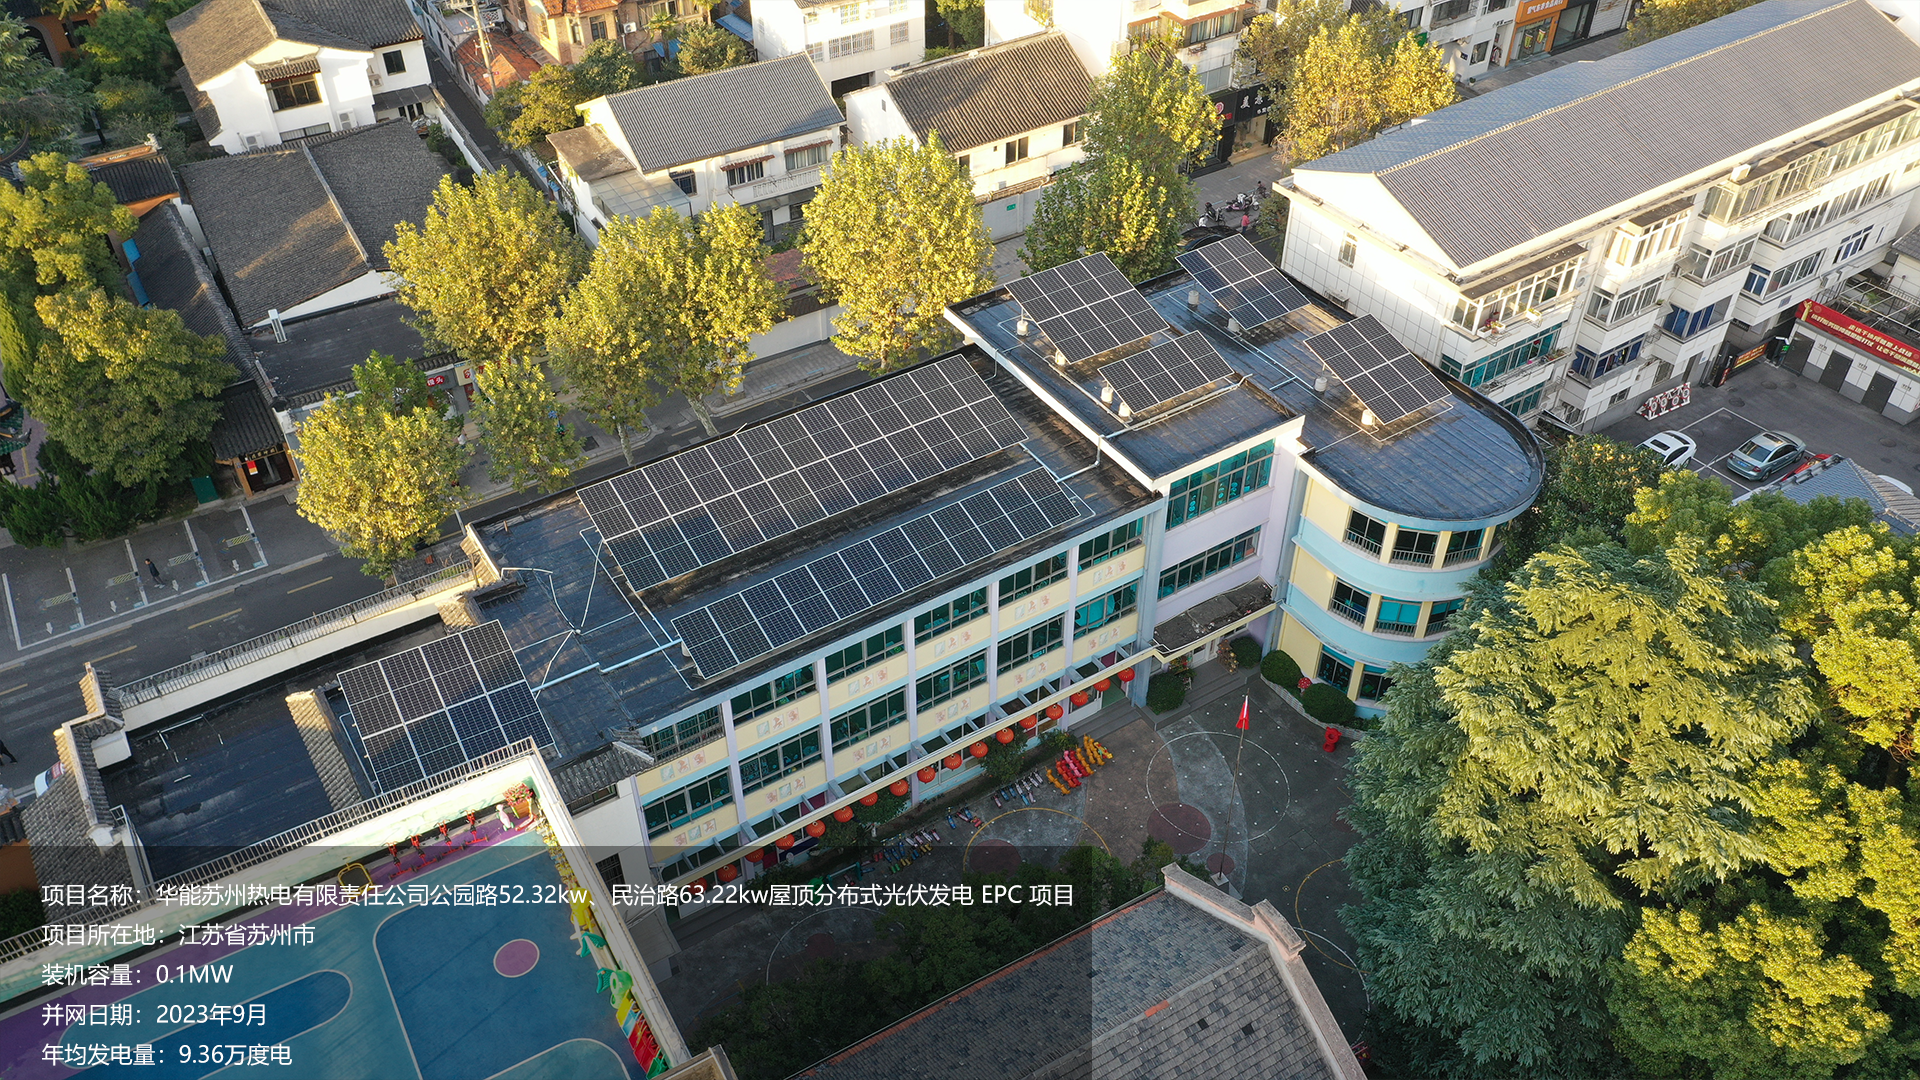 苏州幼儿园项目总装机容量0.1MW，项目位于江苏省苏州市，于2023年9月并网发电，年均发电量约10万度。			